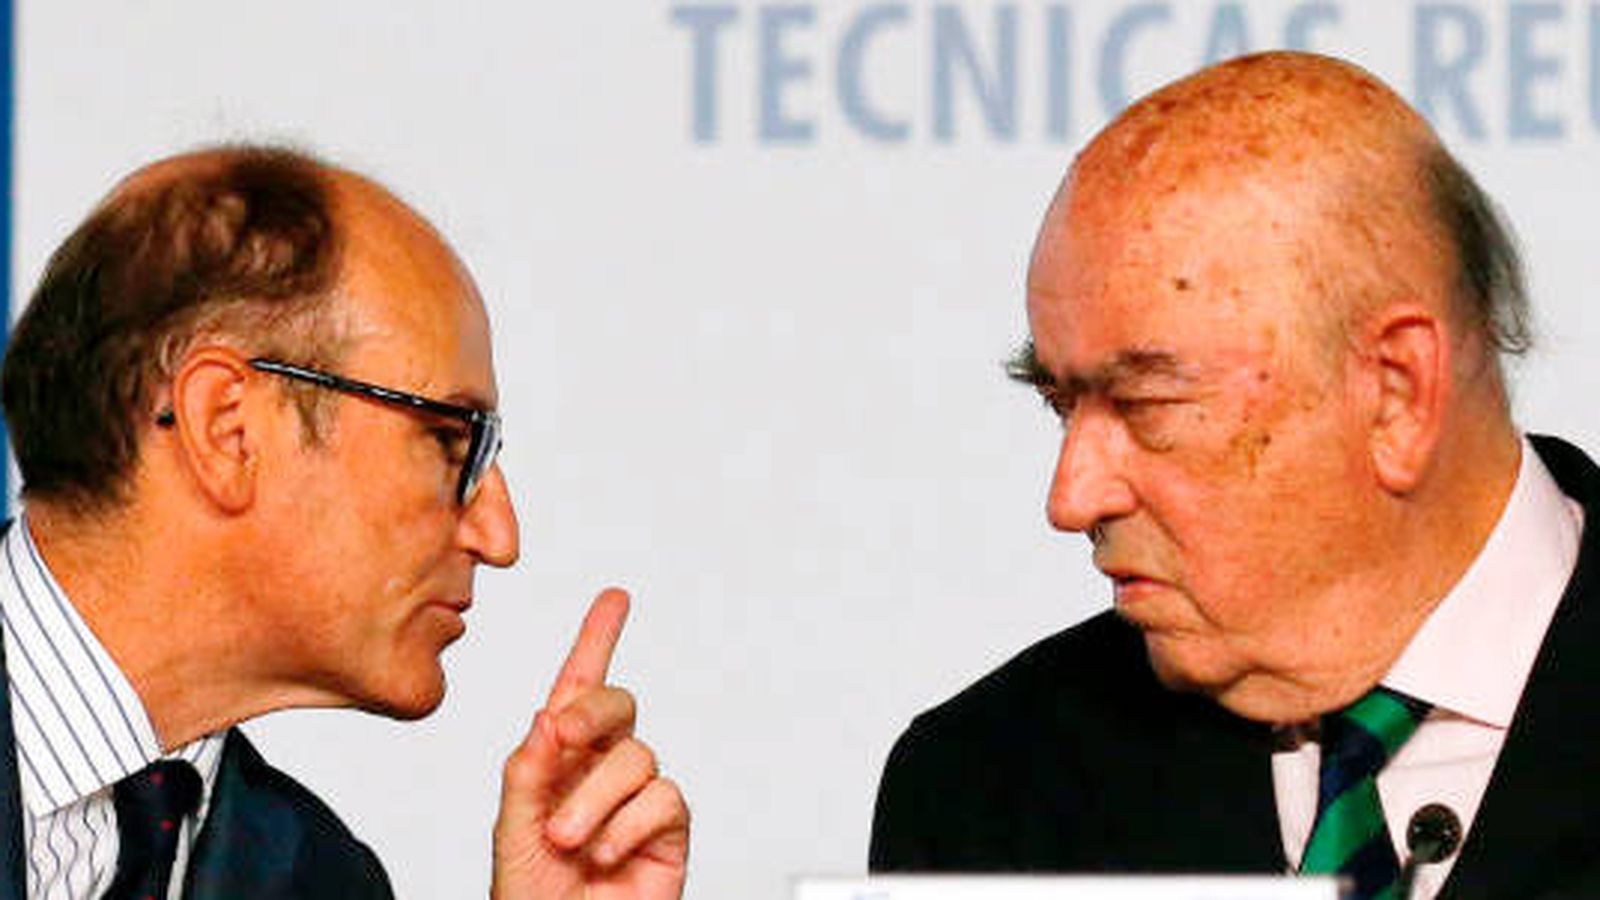 Foto: El presidente de Técnicas Reunidas, José Lladó, junto al consejero delegado, Juan Lladó. (Reuters)